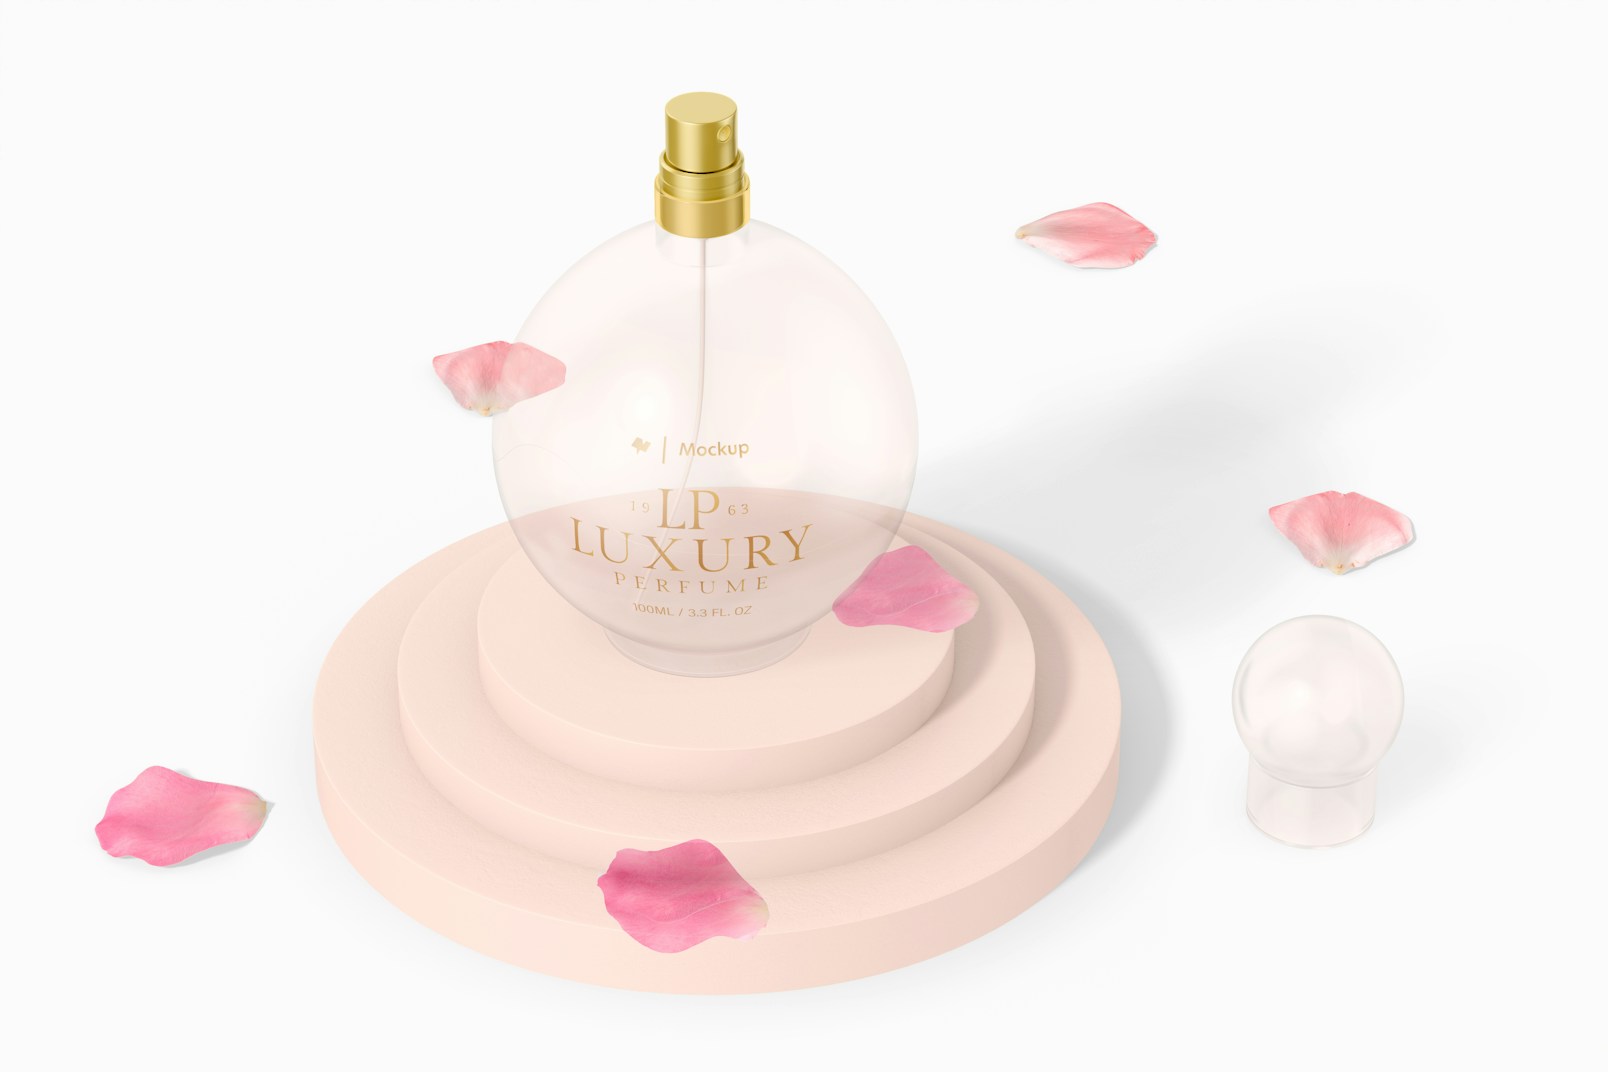 Stubby Luxury Perfume Bottle Mockup, Perspective